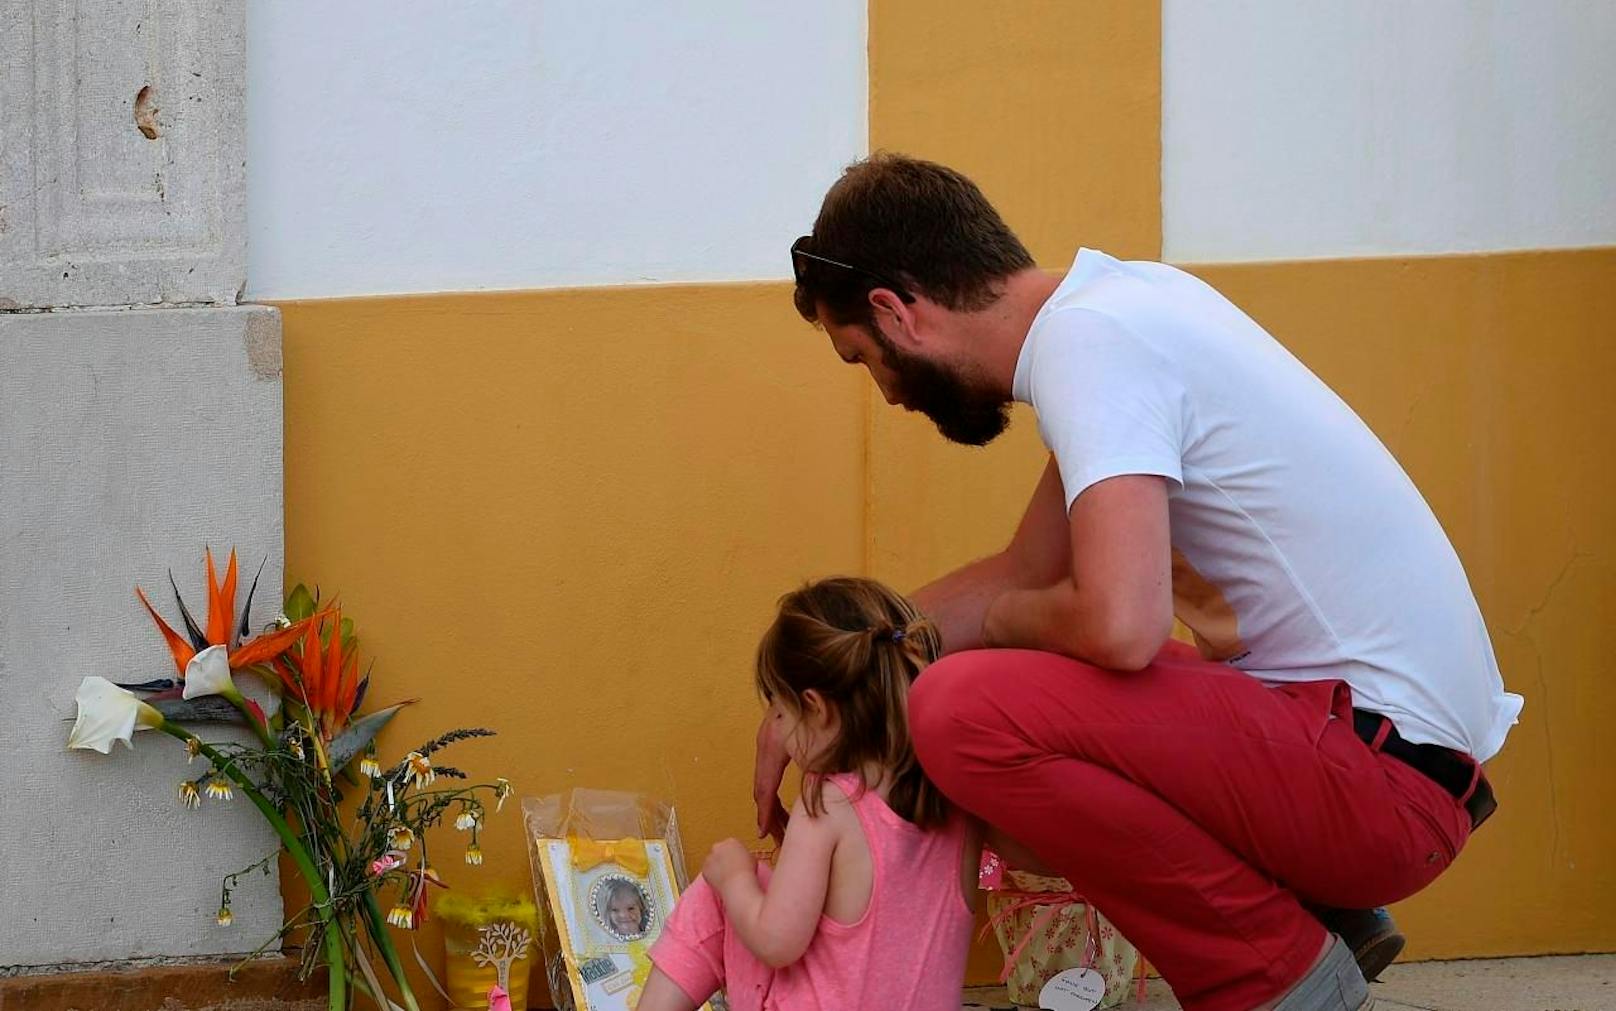 Wird man sie jemals finden? Seit 2007 wird Maddie McCann vermisst. Bewohner von Praia da Luz in Portugal, hier verschwand die kleine Britin, gedenken des armen Mädchens regelmäßig mit Blumen und Kerzen. 